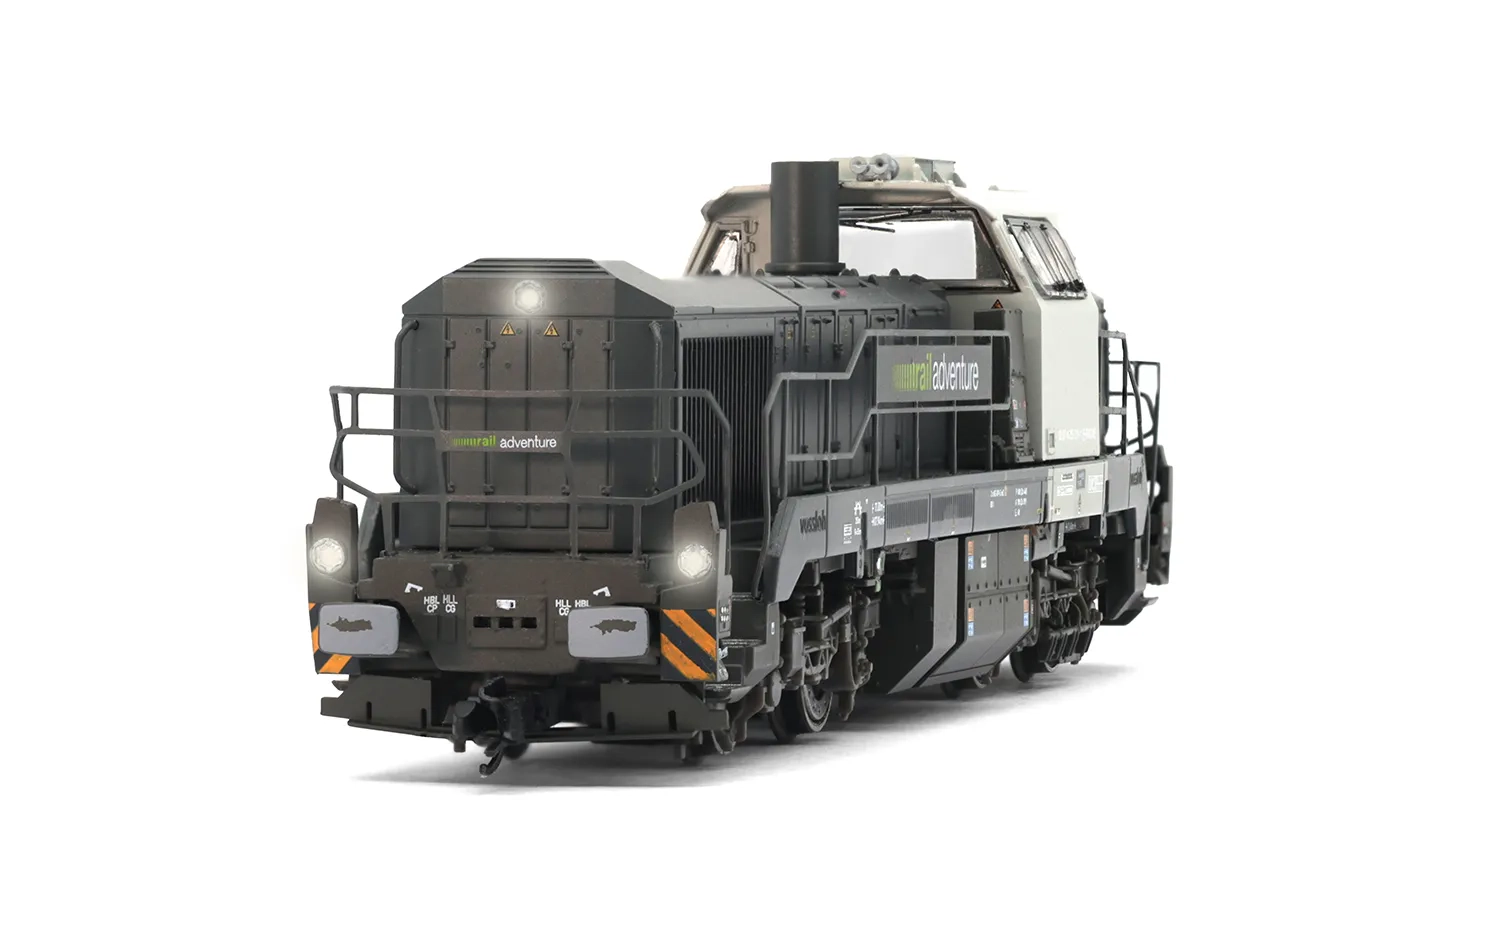 RailAdventure, Diesellokomotive Vossloh DE 18, in grauer Farbgebung, Ep. VI